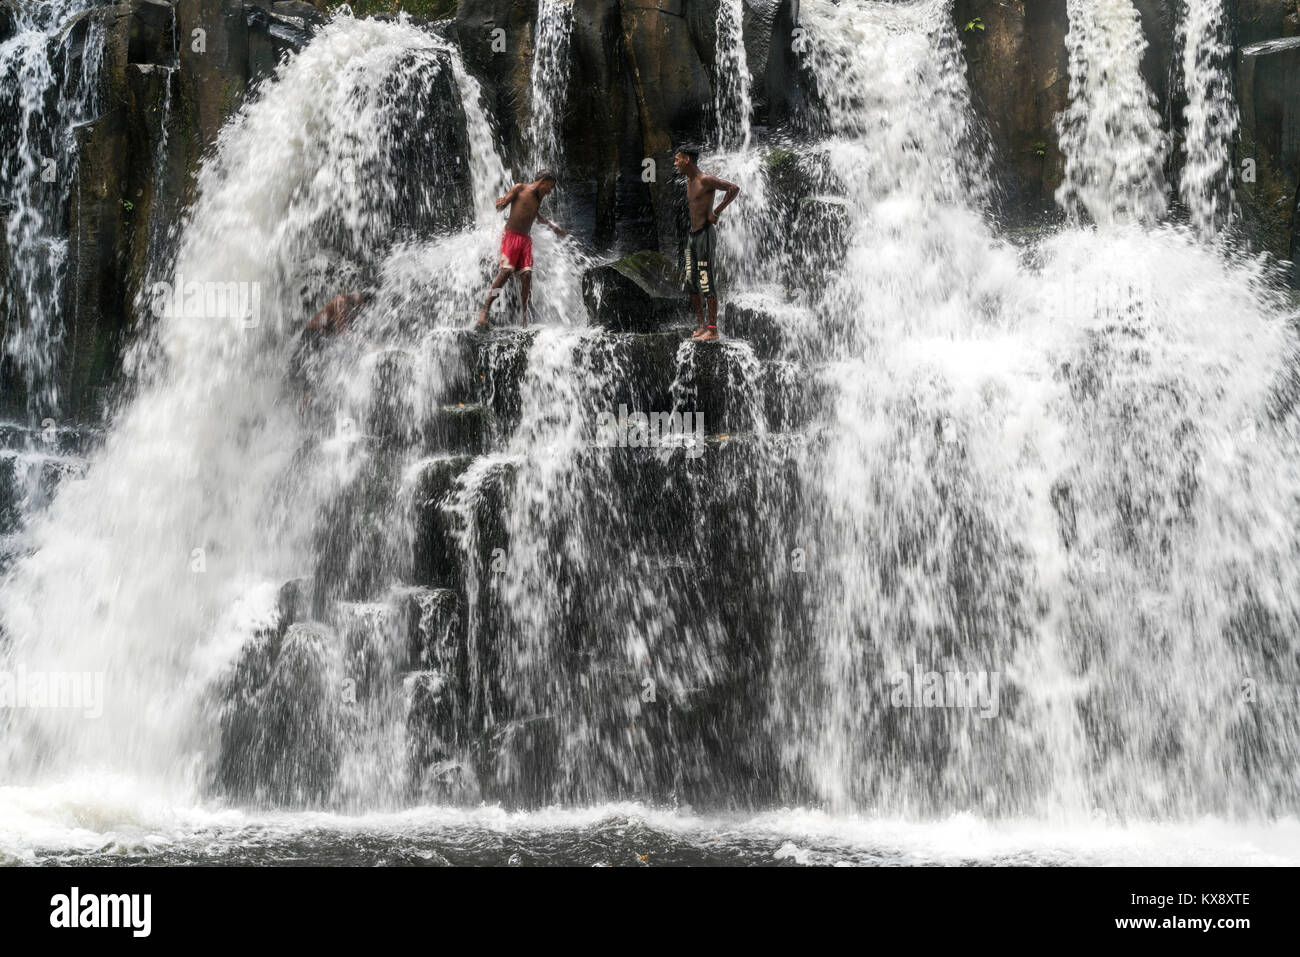 Einheimische Jugendliche Gmbh springen und baden im Wasserfall Rochester Falls bei Souillac, Mauricio, Afrika | juventud local bañarse y saltar en t Foto de stock